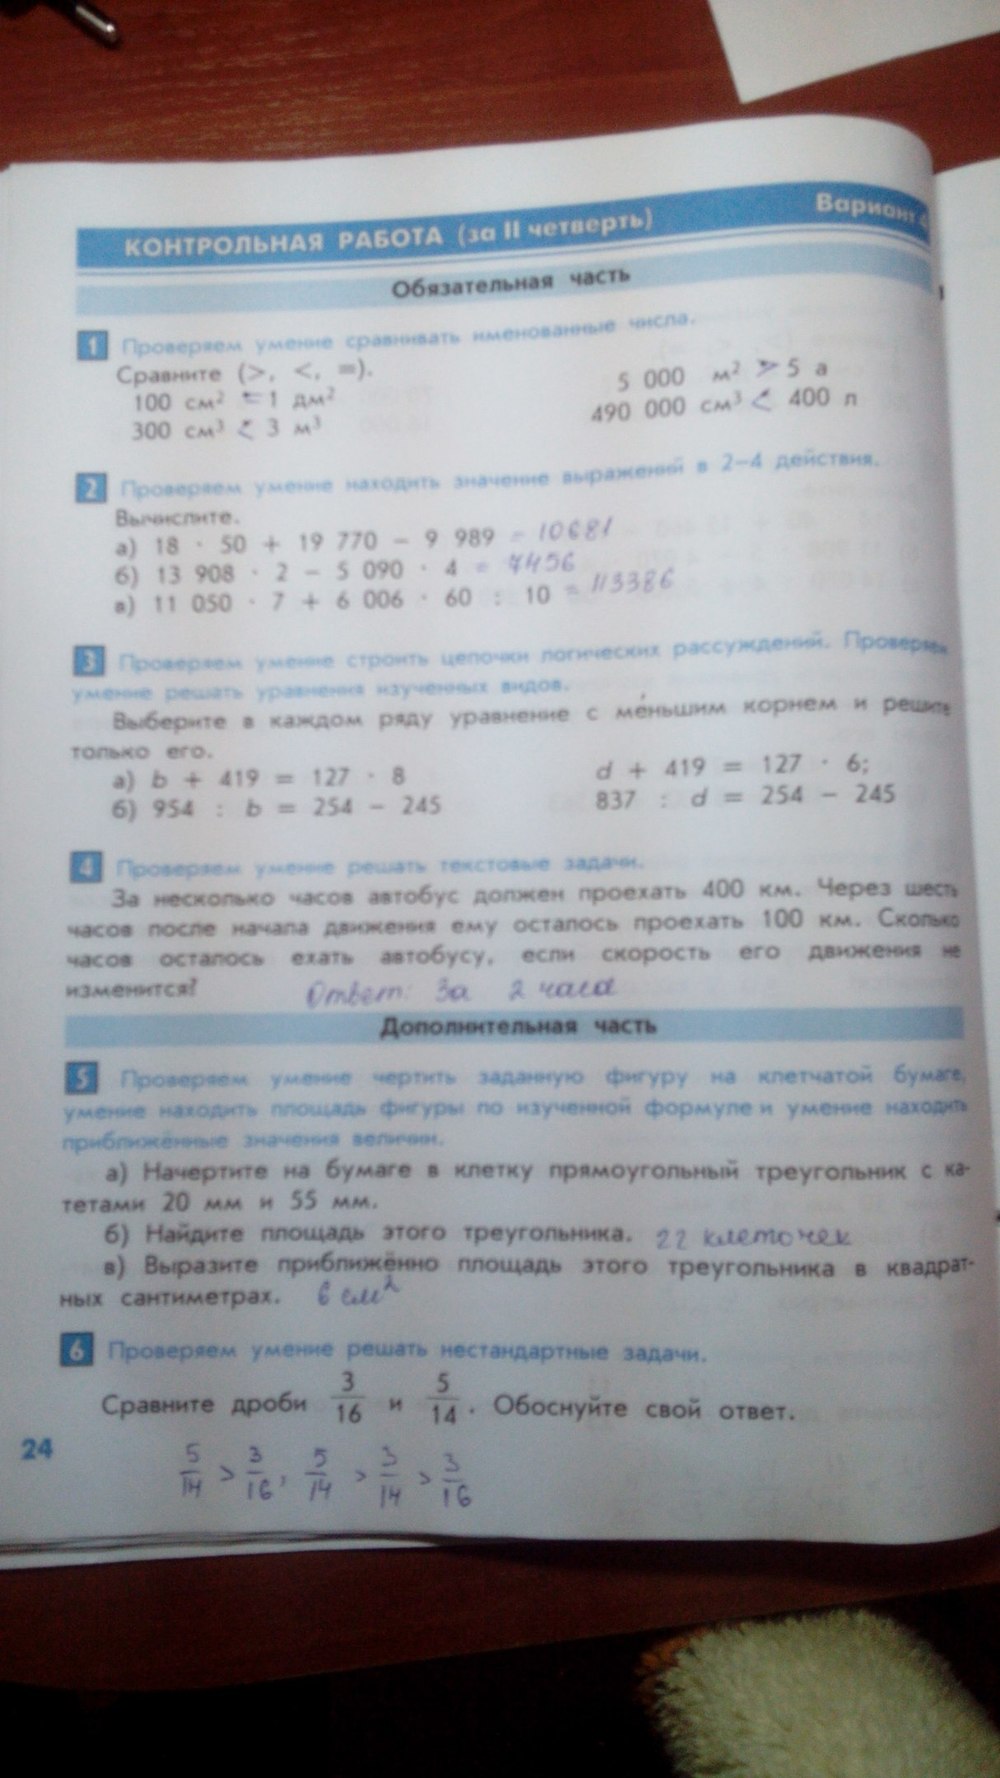 гдз 4 класс тесты и контрольные работы страница 24 математика Козлова, Рубин